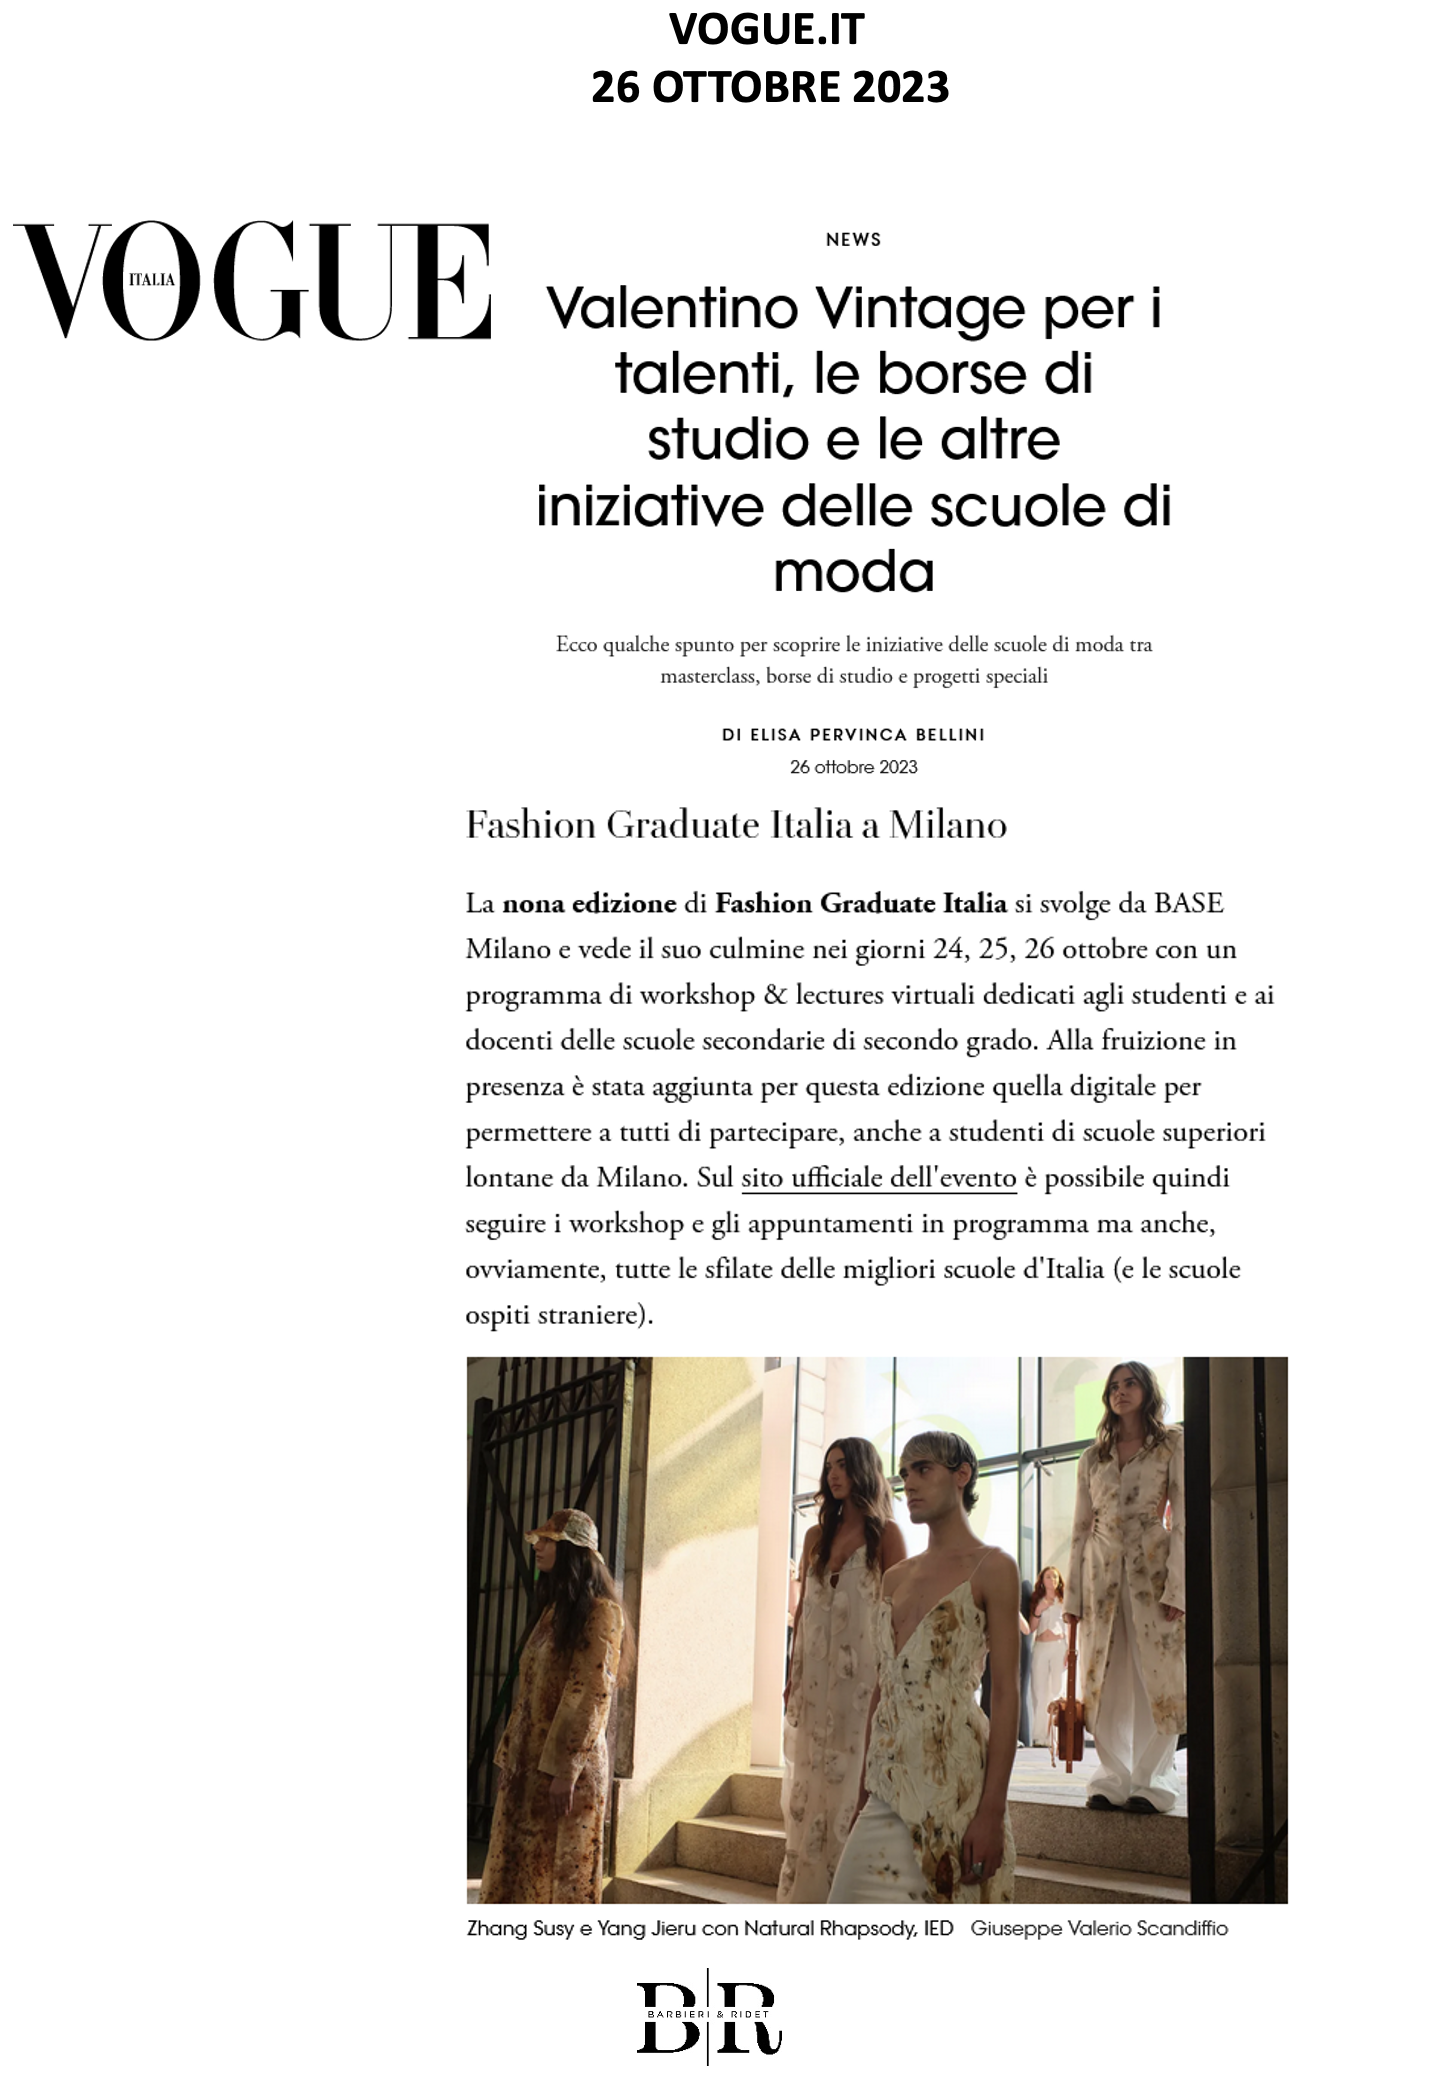 Fashion Graduate Italia a Milano